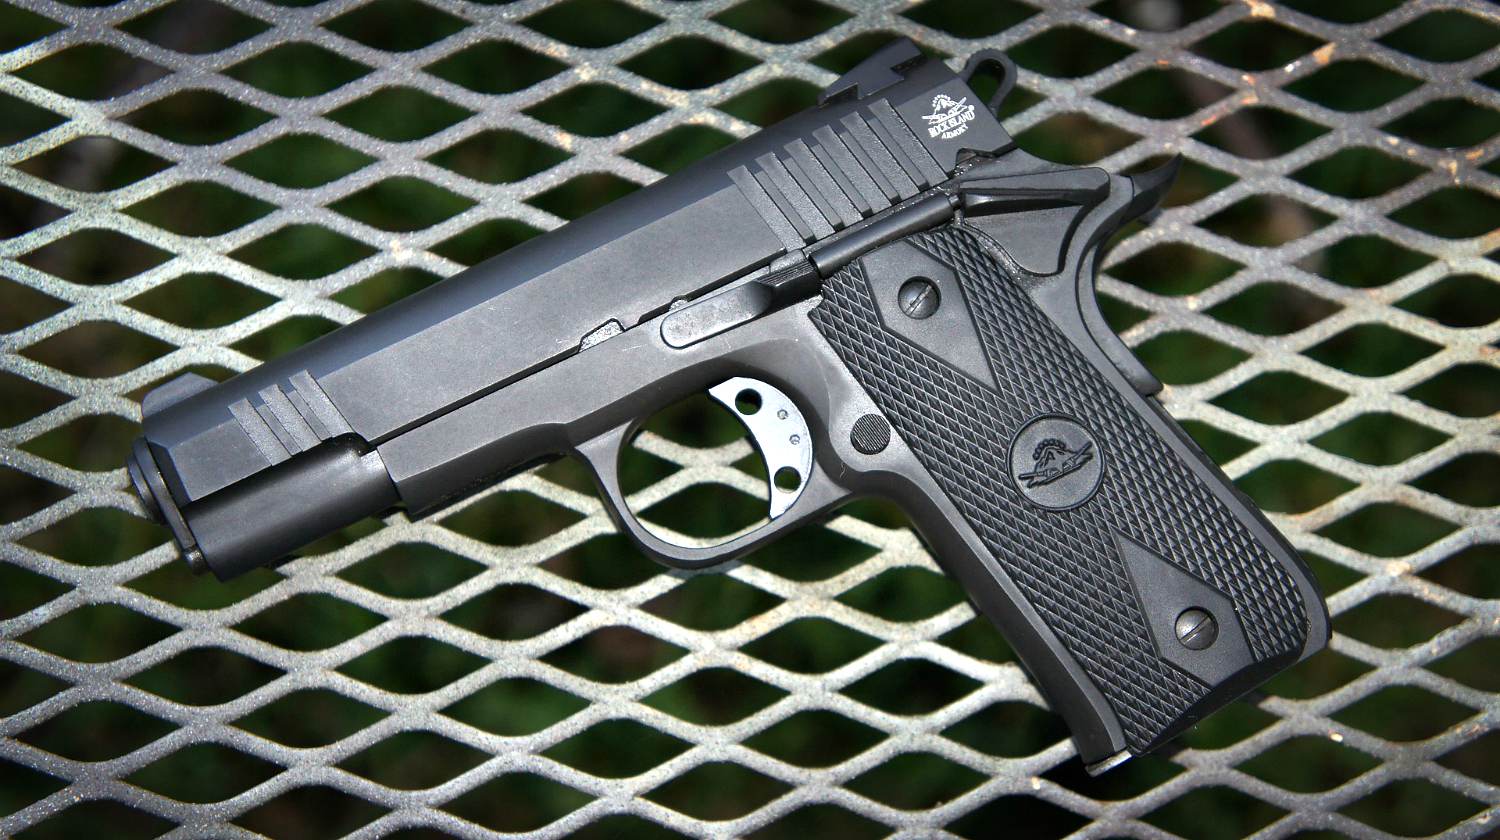 Feature | 9mm pistol handgun | Best Low-Cost Pistol Options For Your Budget